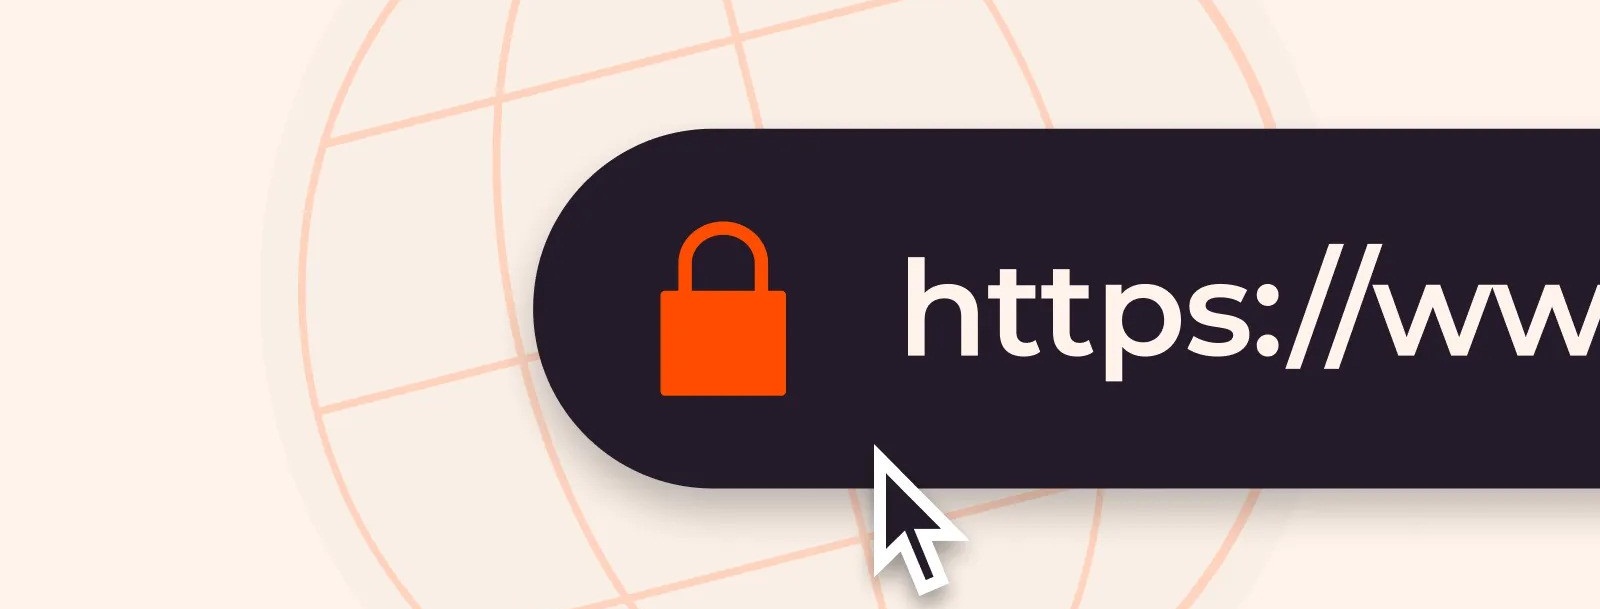 تفاوت HTTP و HTTPS در چیست؟